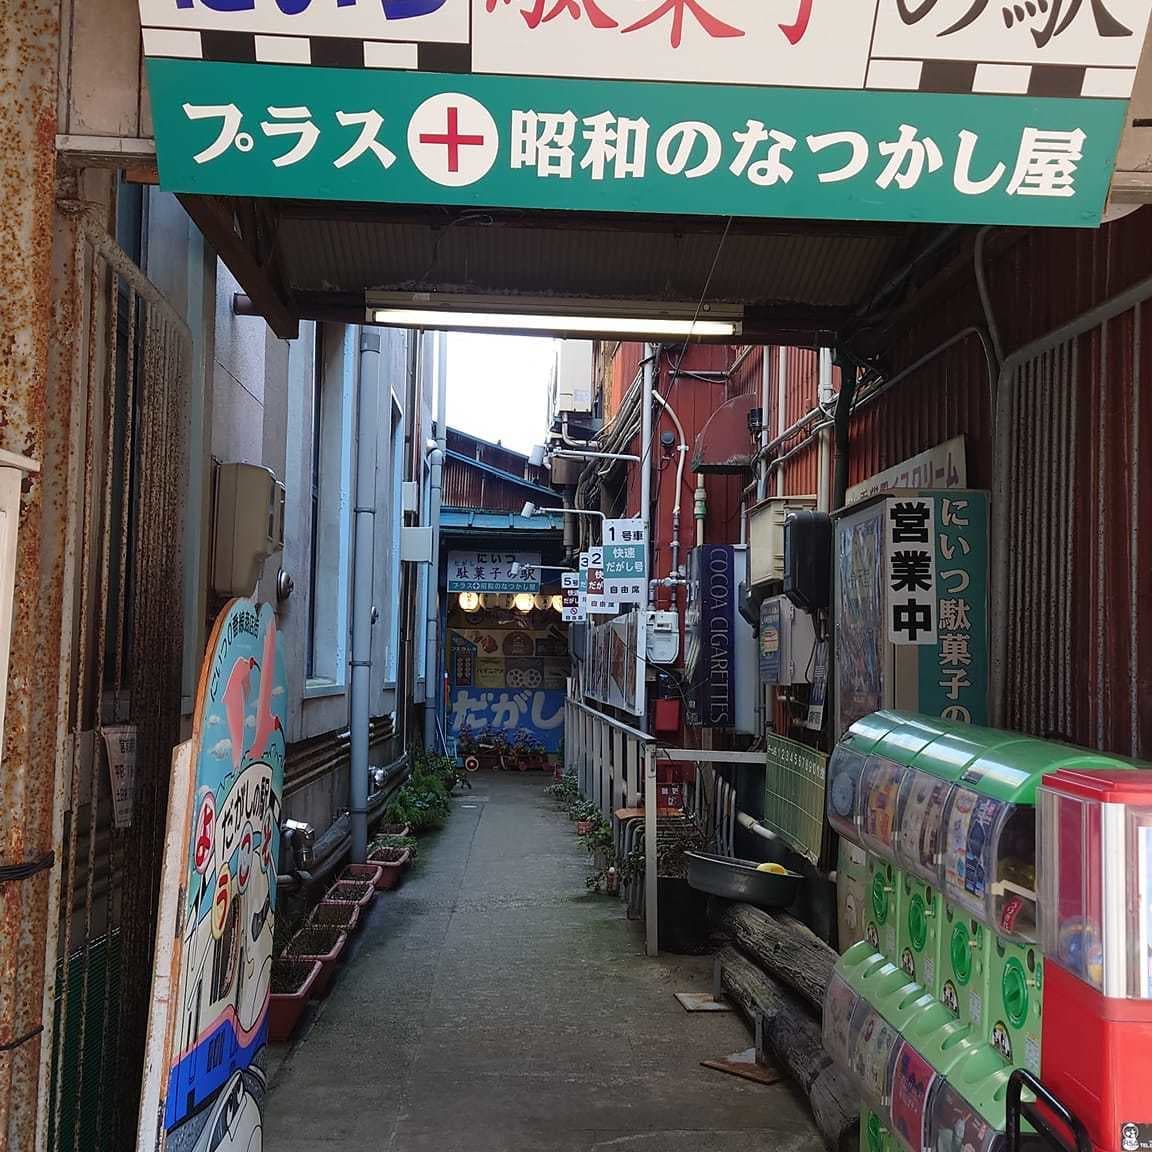 新津駄菓子の駅昭和のなつかし屋